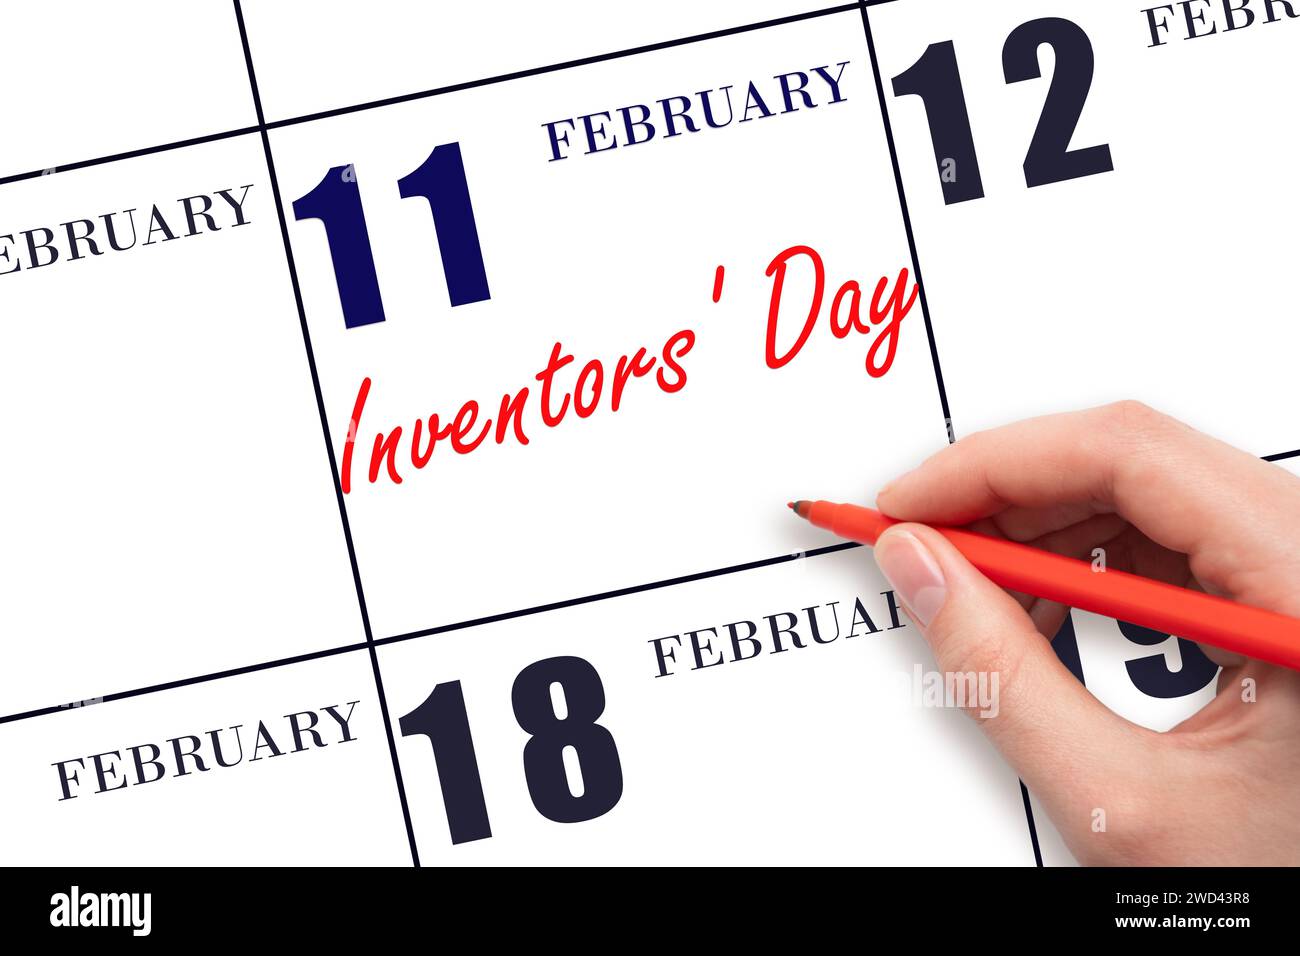 Februar: Handschrift Text Erfinder' Day am Kalenderdatum. Speichern Sie das Datum. Urlaub. Tag des Jahres-Konzept. Stockfoto